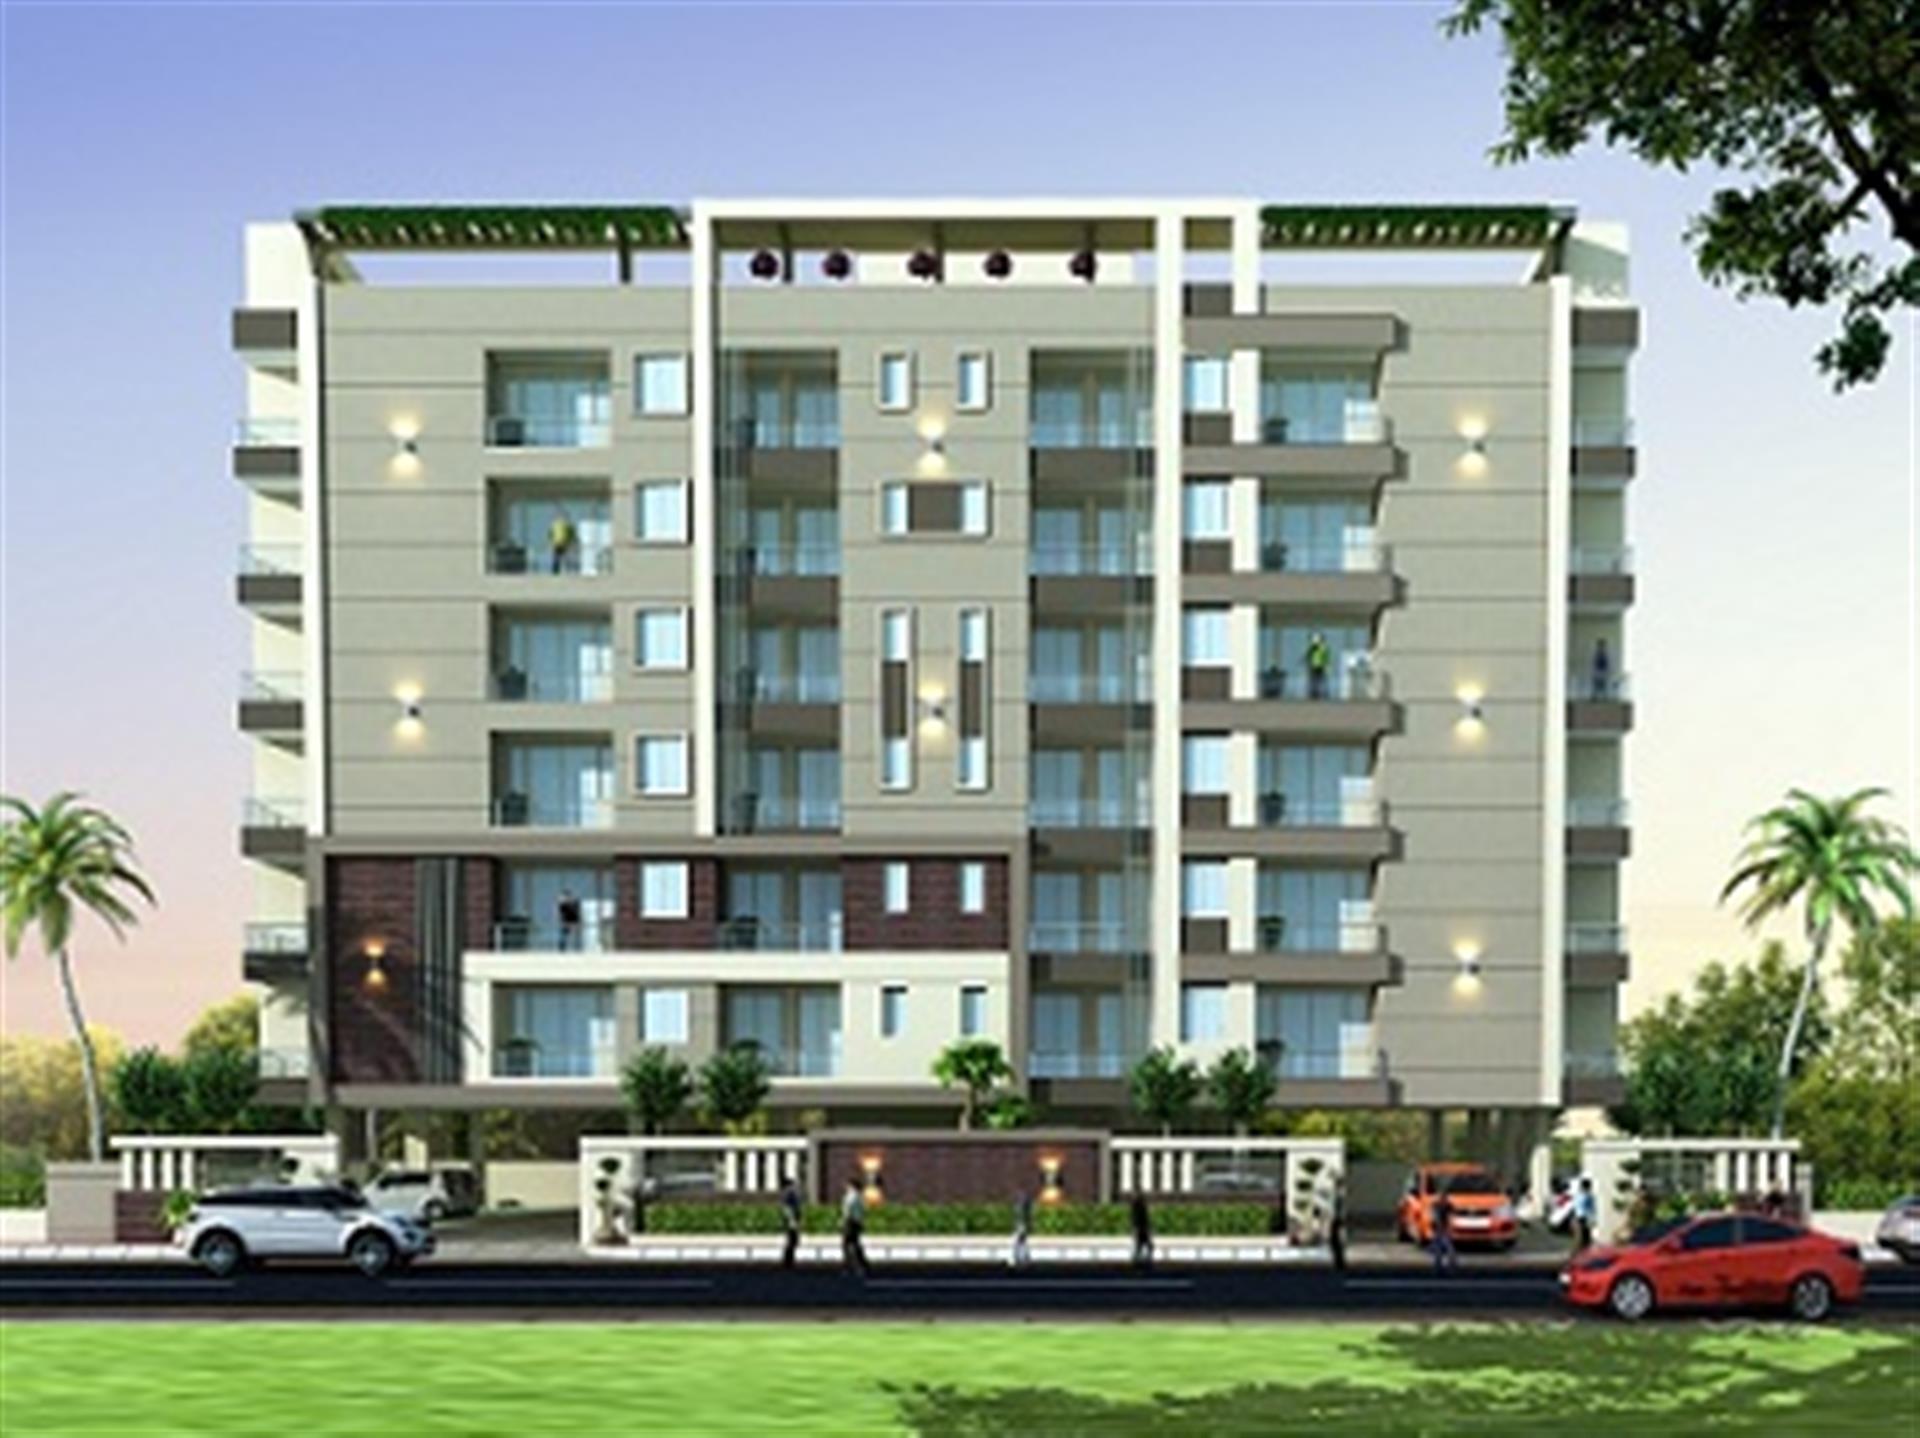 vijay-apartments-ajmer-road-jaipur-1-2-3-bhk-apartment